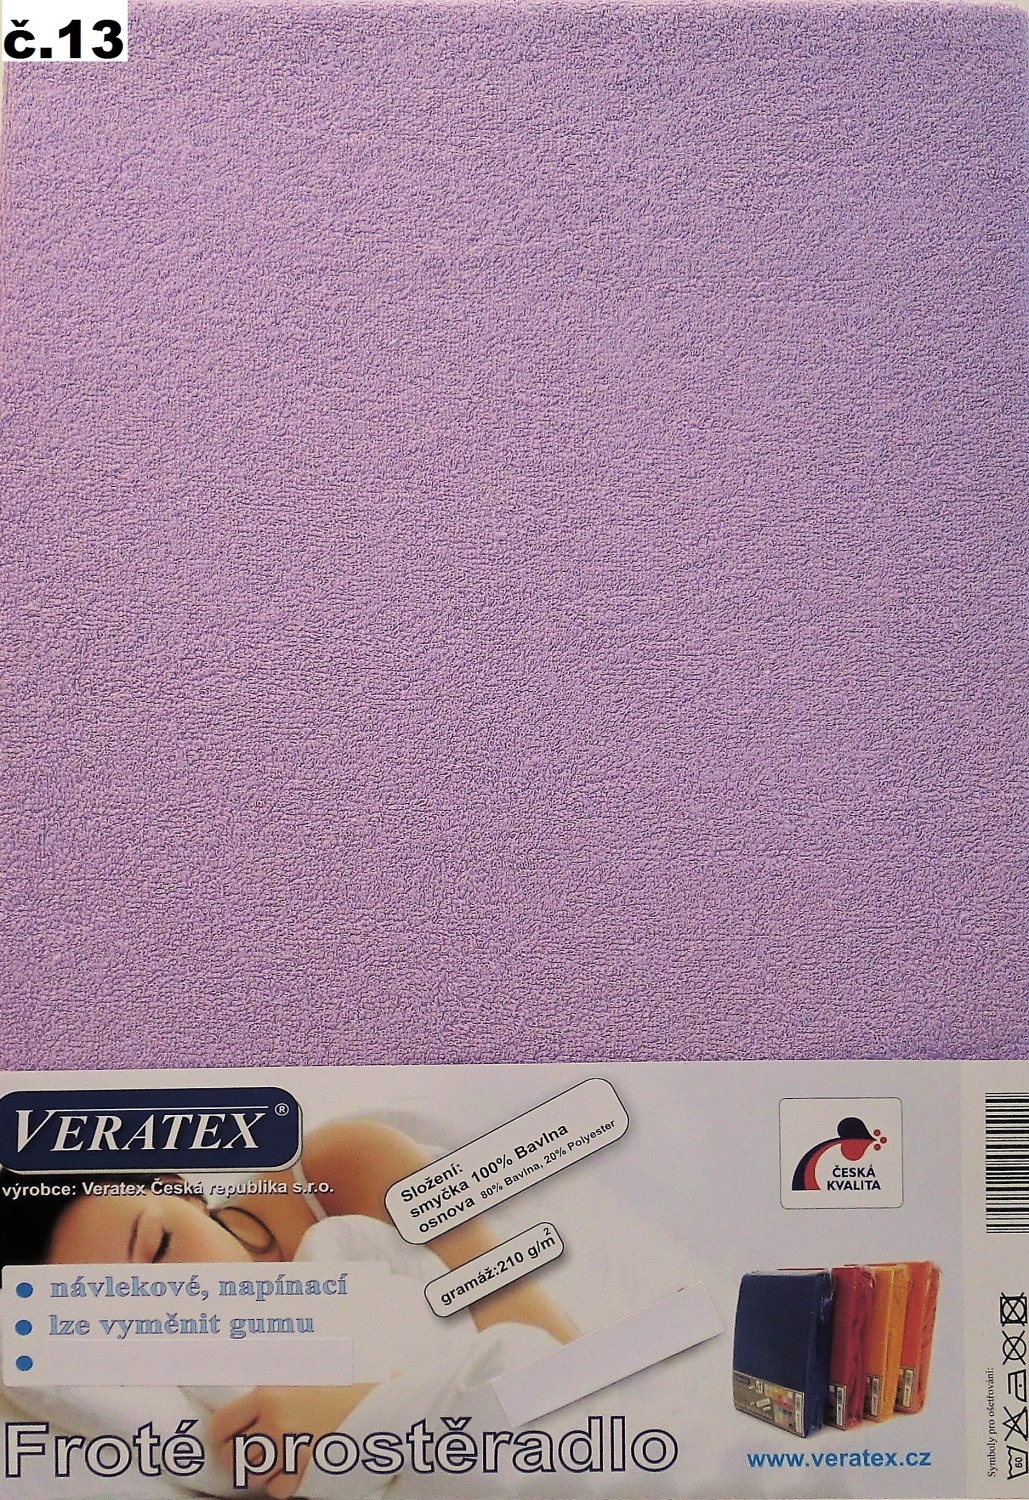 Veratex Froté prostěradlo dvoulůžko 180x200/20cm (č.13- fialková)